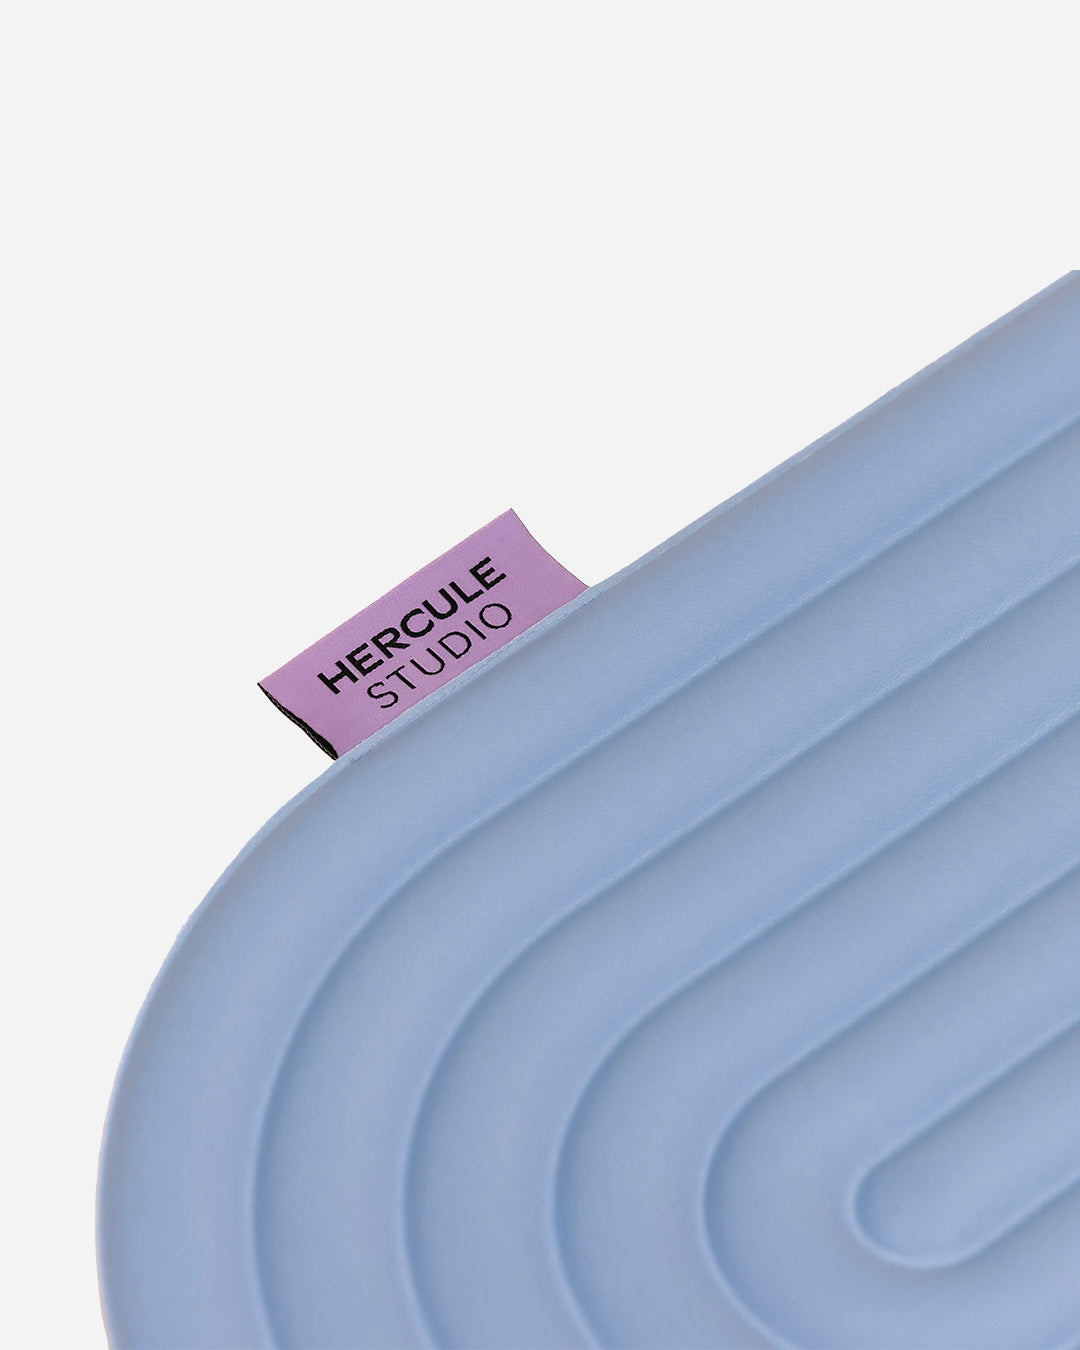 Mini tapis de sol pad de confort de la marque hercule studio modèle galé couleur blue jean packshot zoomé